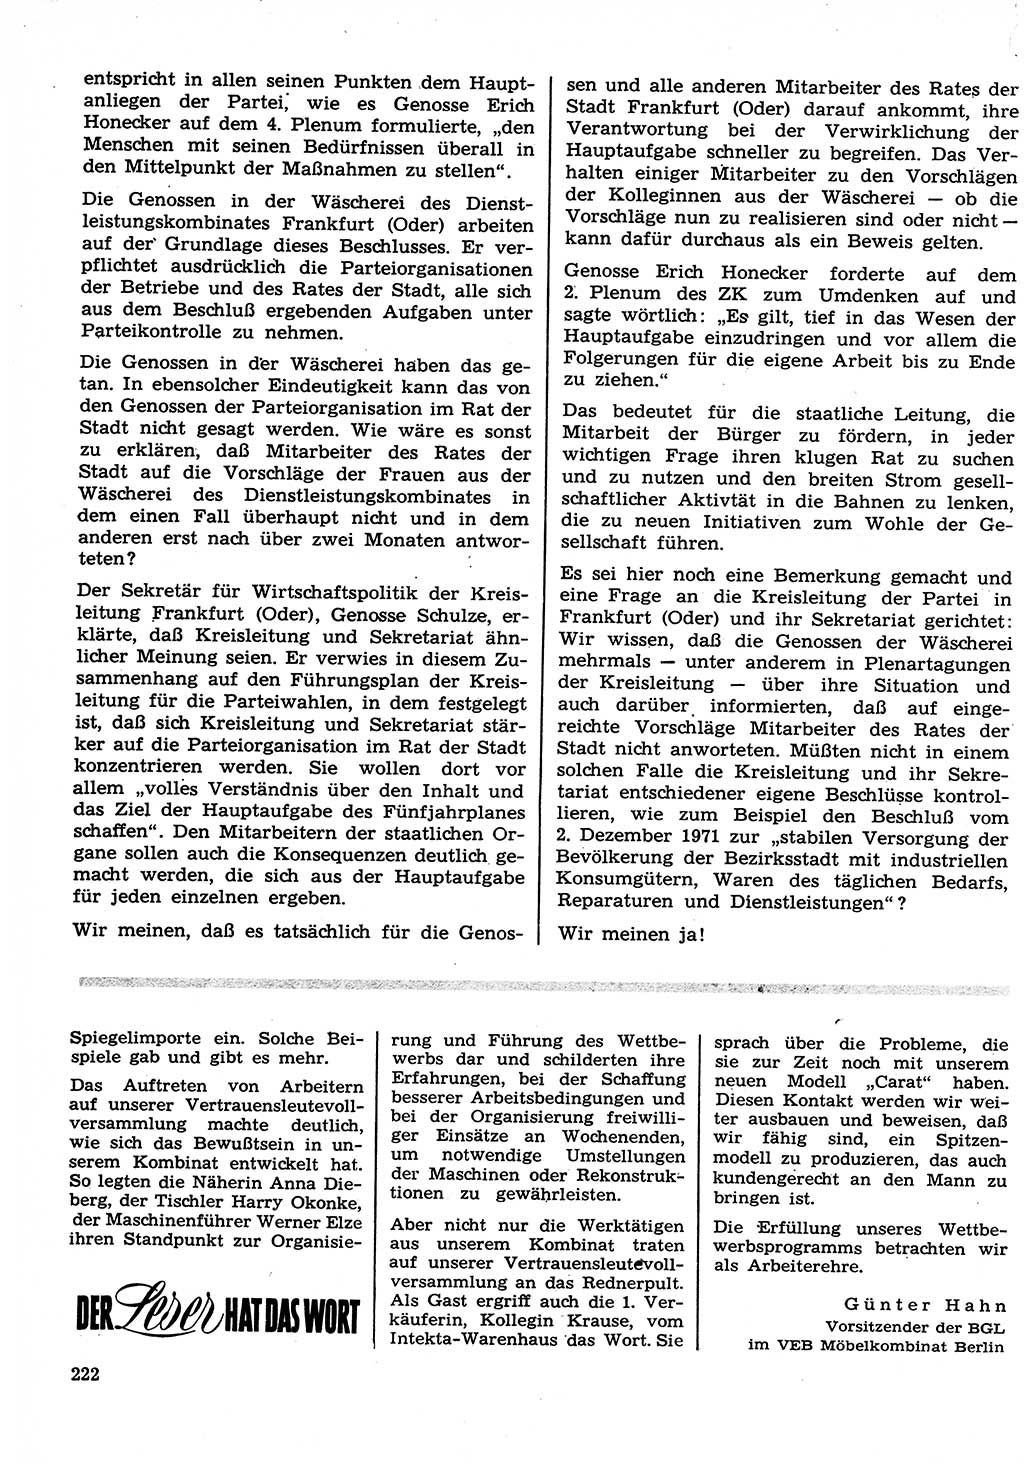 Neuer Weg (NW), Organ des Zentralkomitees (ZK) der SED (Sozialistische Einheitspartei Deutschlands) für Fragen des Parteilebens, 27. Jahrgang [Deutsche Demokratische Republik (DDR)] 1972, Seite 222 (NW ZK SED DDR 1972, S. 222)